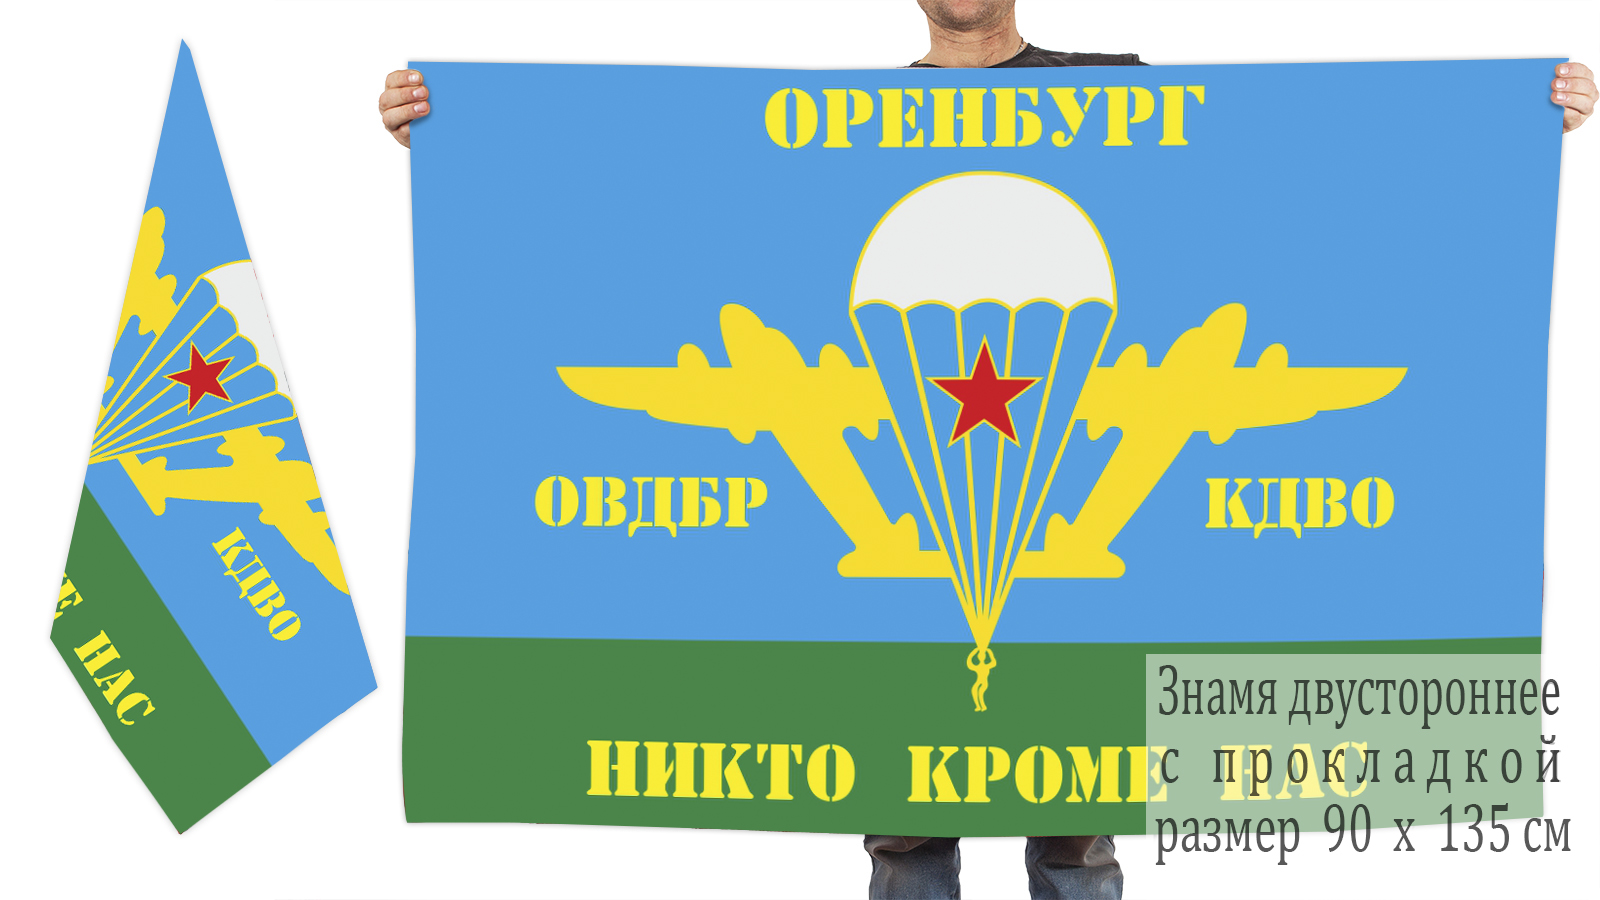 Двусторонний флаг ВДВ ОВДБР КДВО Оренбург